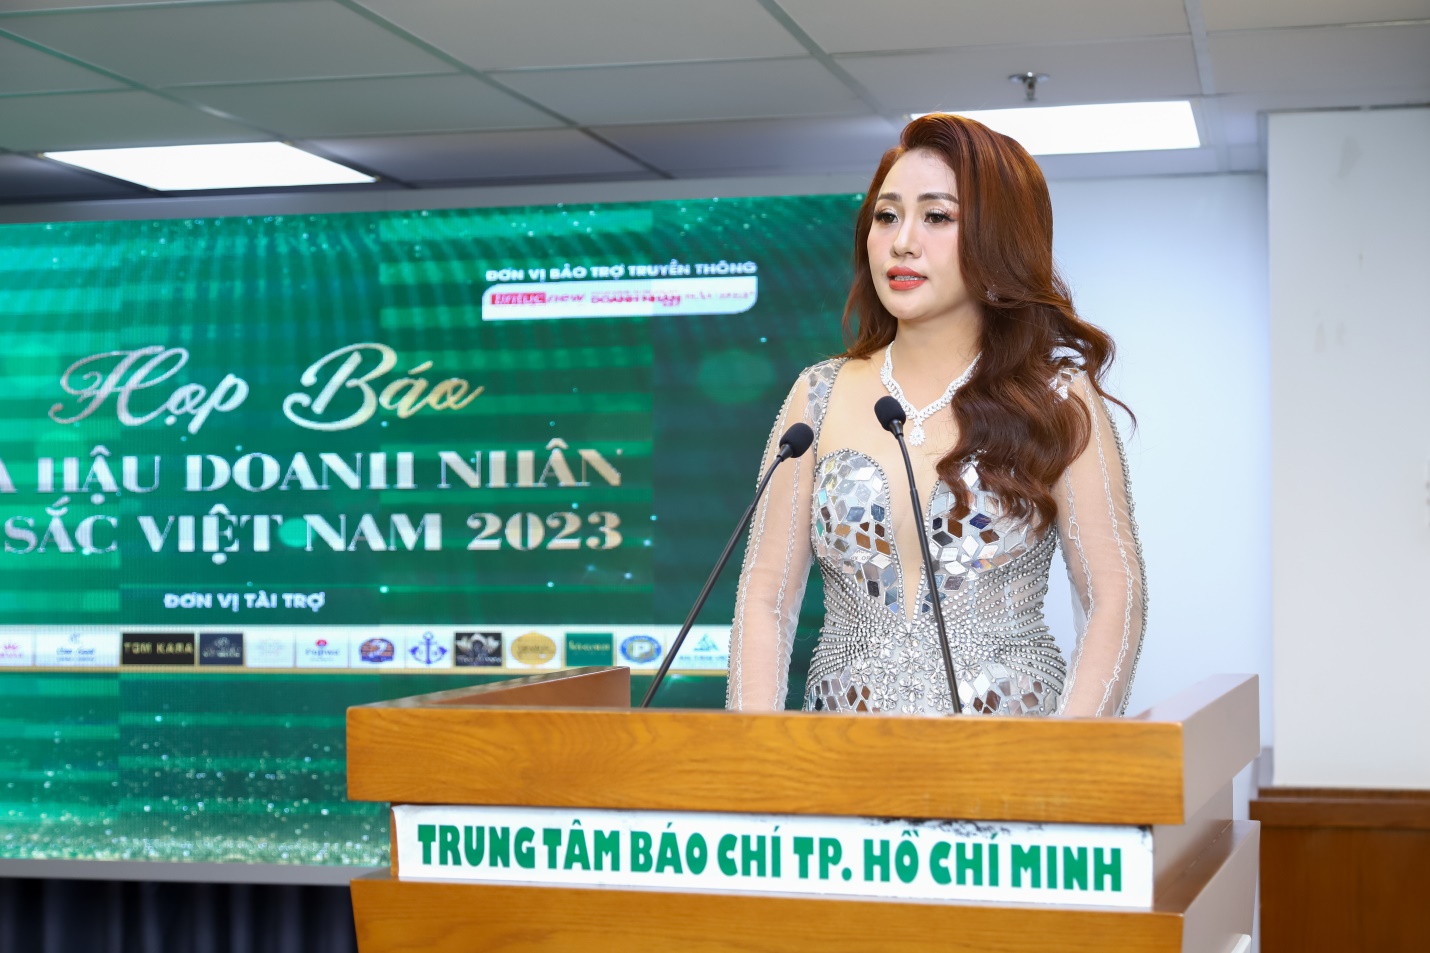 Hoa hậu Doanh nhân Tài sắc Việt Nam 2023: Sự kiện văn hóa – giải trí chào mừng 130 năm thành lập thành phố Đà Lạt - 3